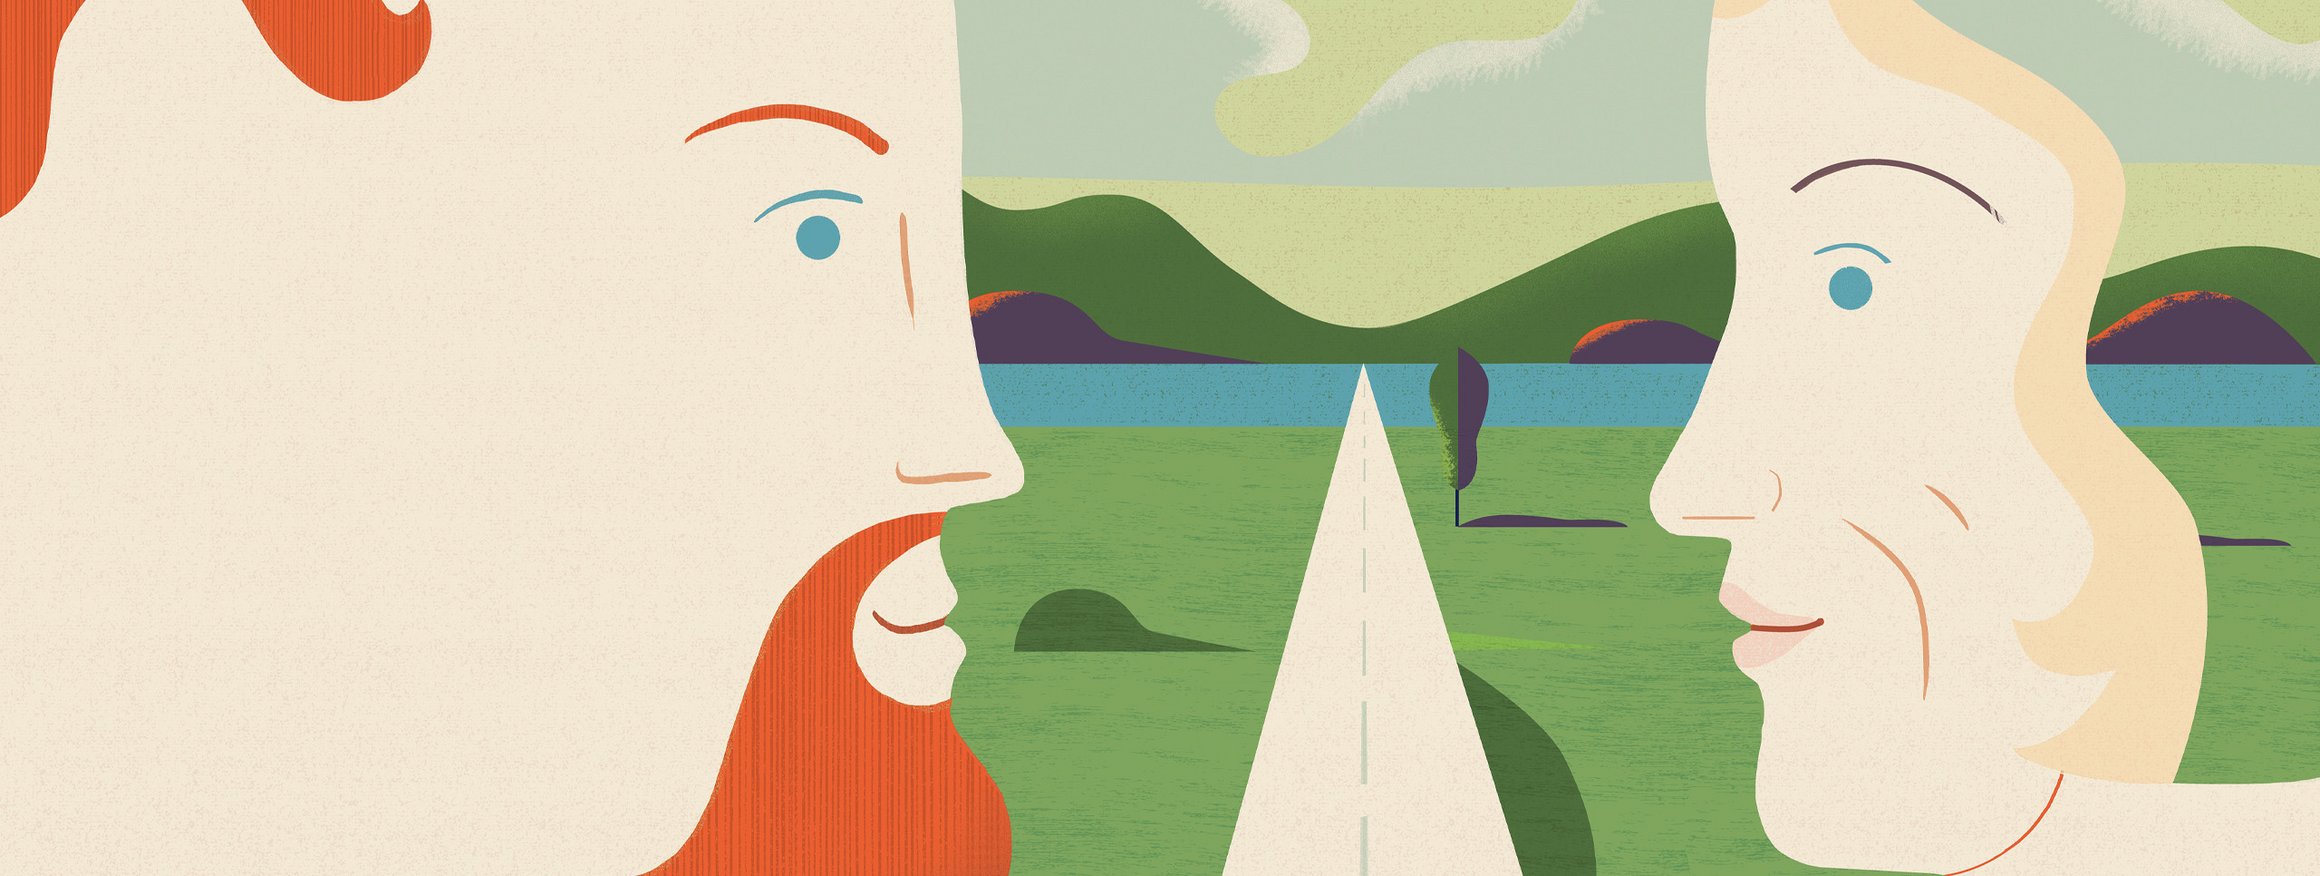 Die Illustration zeigt einen Mann mit Bart und seine Mutter, die sich gegenüber stehen und in die Augen schauen, verbunden mit einem gemeinsamen Weg